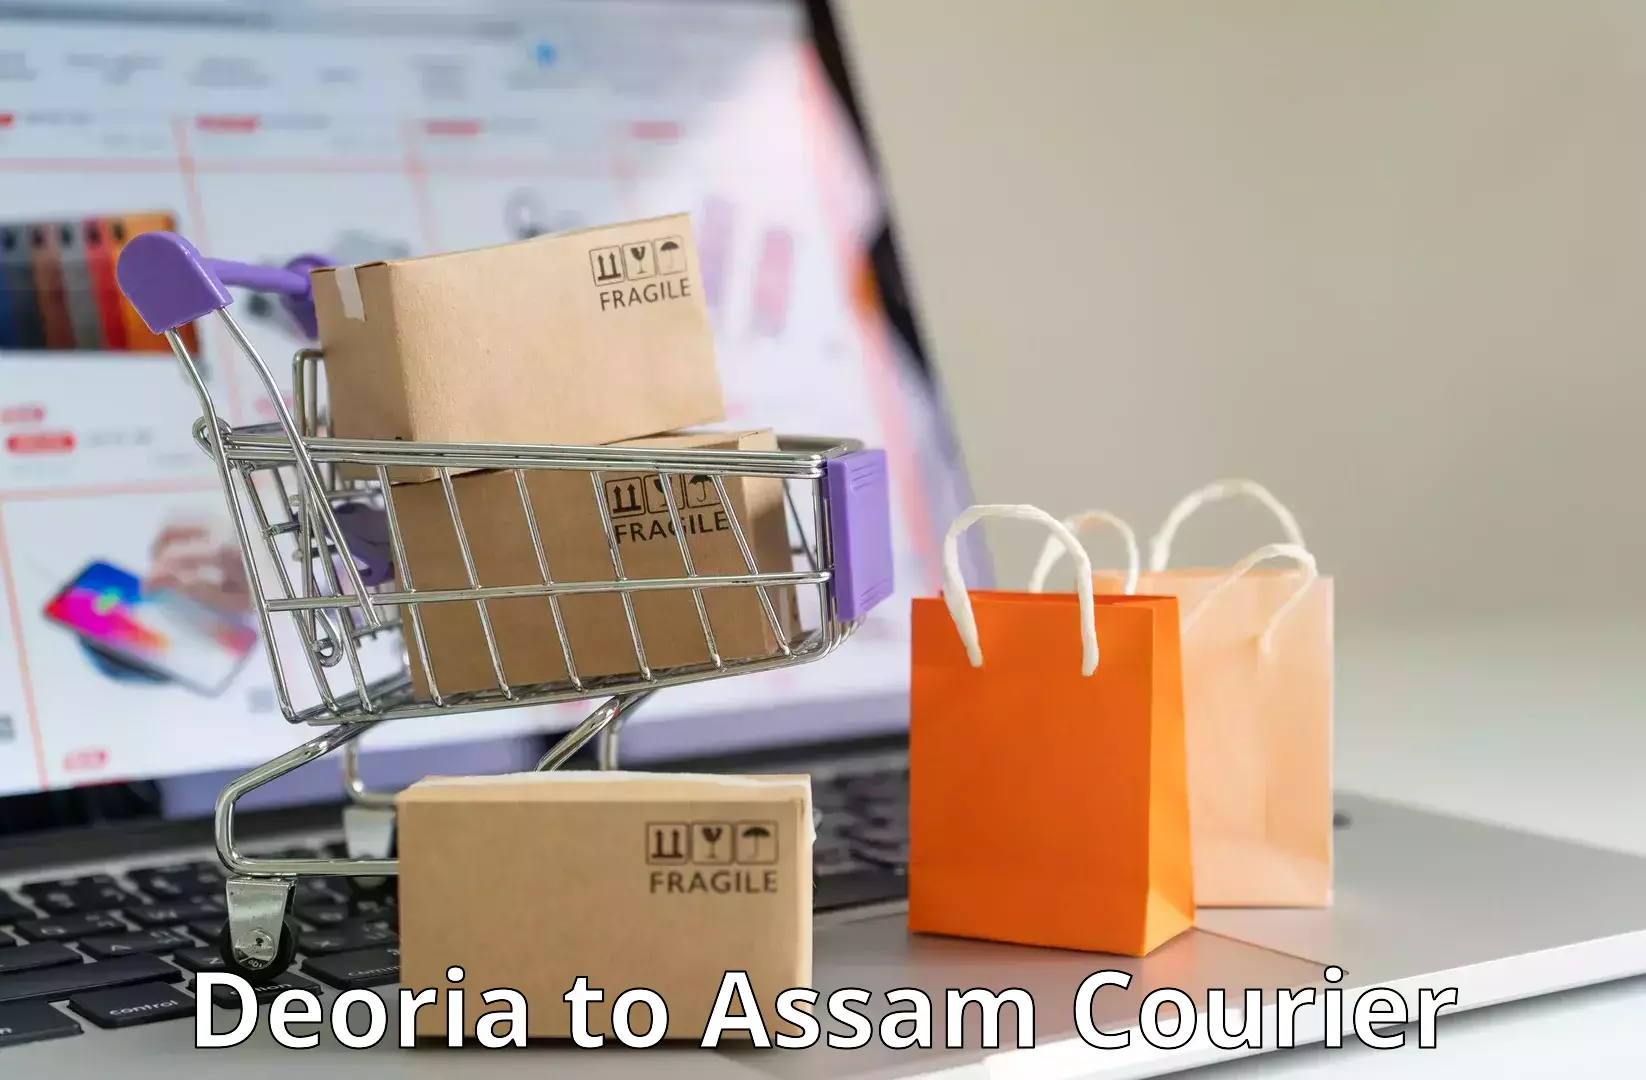 24-hour courier service Deoria to Assam